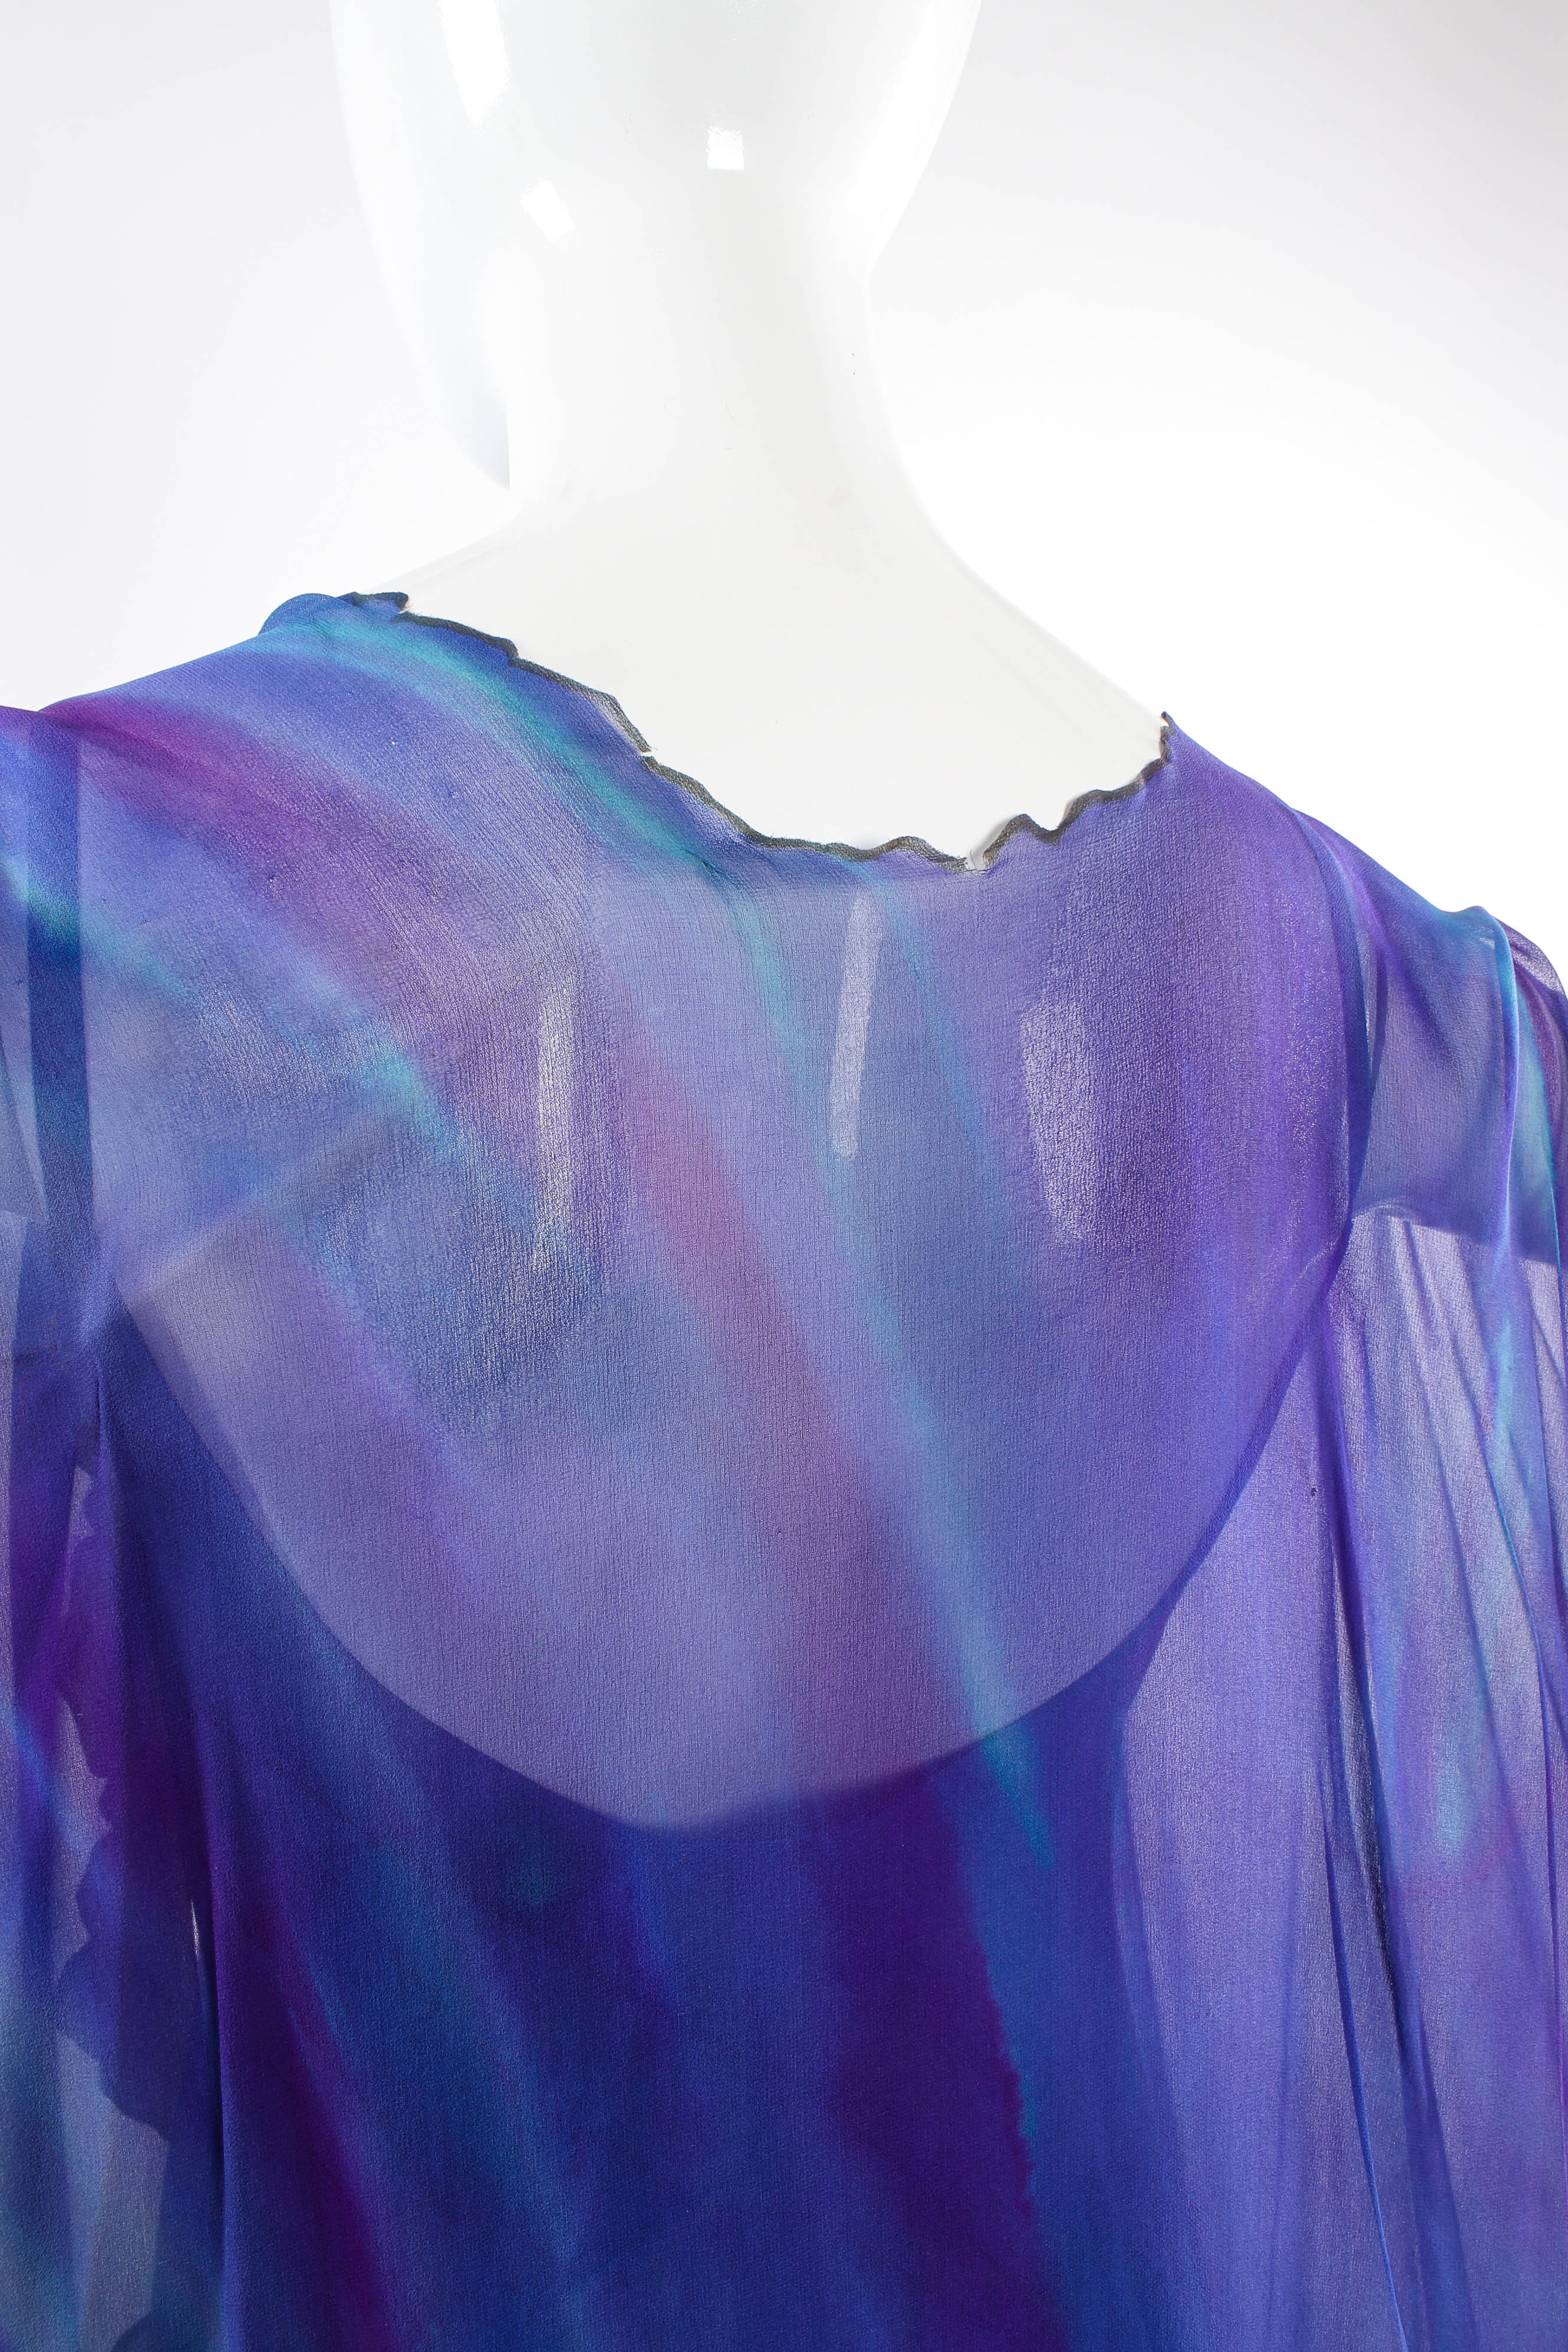 Vintage SHEBUE Watercolor Tie Dye Dress & Shawl Set back shawl small tear detail @ Recess LA